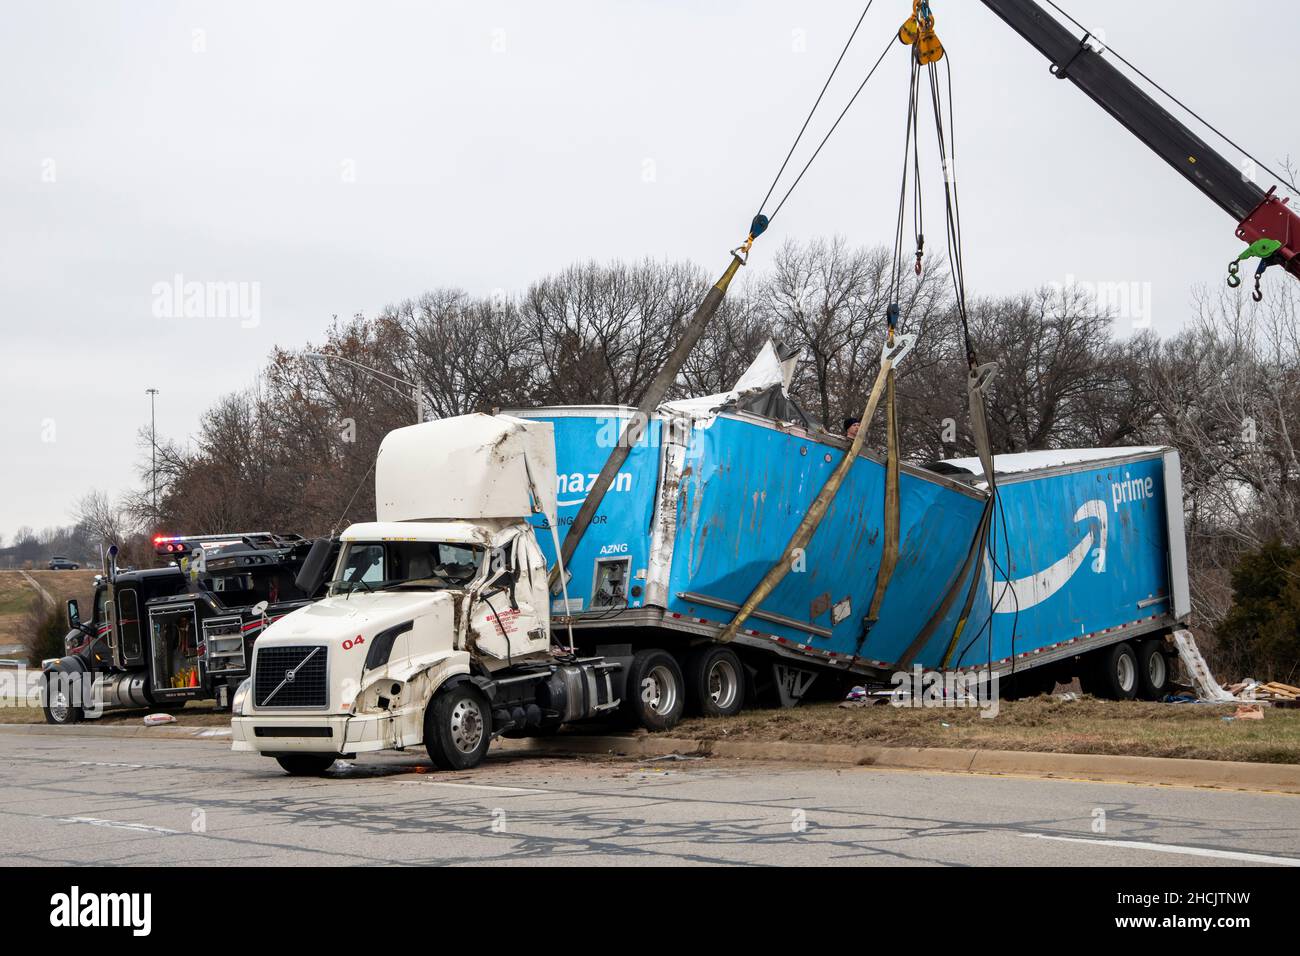 Kansas City, Kansas.Le camion qui tirait la remorque Amazon Prime pleine de  nourriture pour chiens est sorti de la rampe d'accès à l'autoroute et a  basculé sur la chaussée.Chariot de remorquage avec